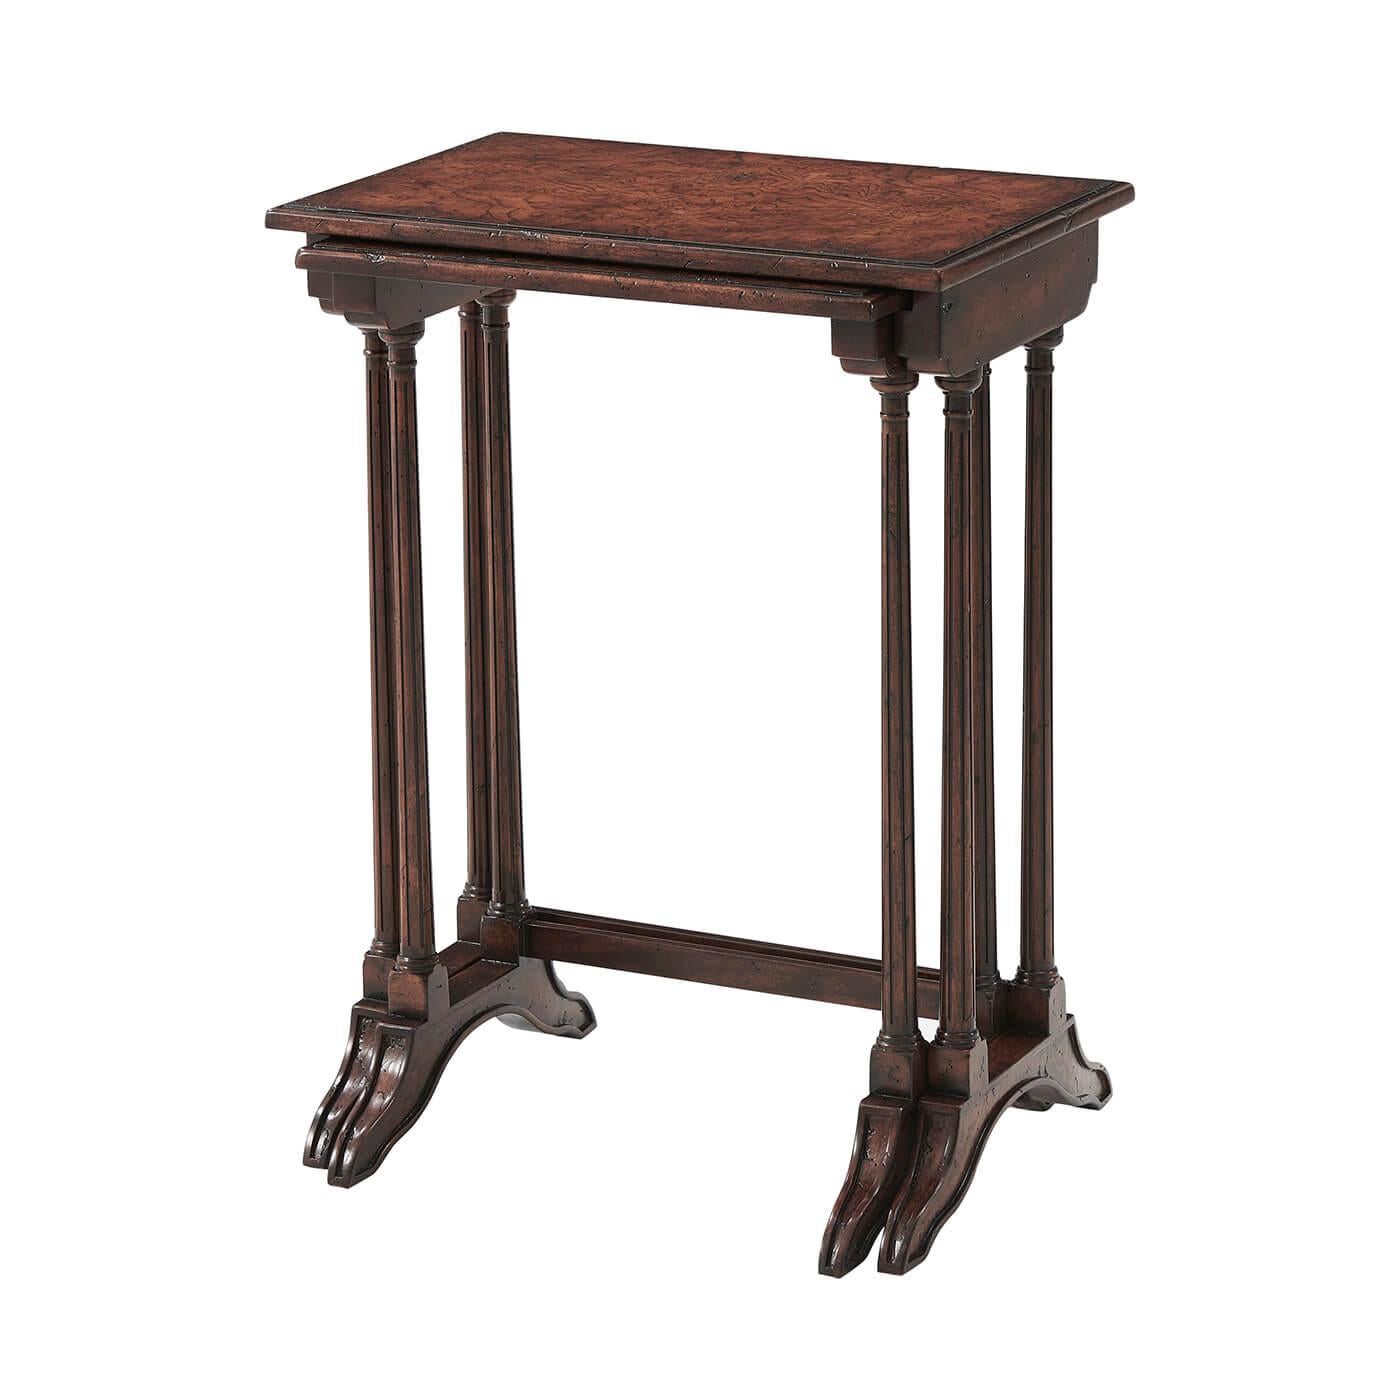 Eine englische Regency-Stil Nest von zwei Esche Wurzelholz Tische, die geformte Kante rechteckige Platten über zarte gedreht und kannelierte Ende unterstützt auf Schlitten Füße. 

Abmessungen: 19.25